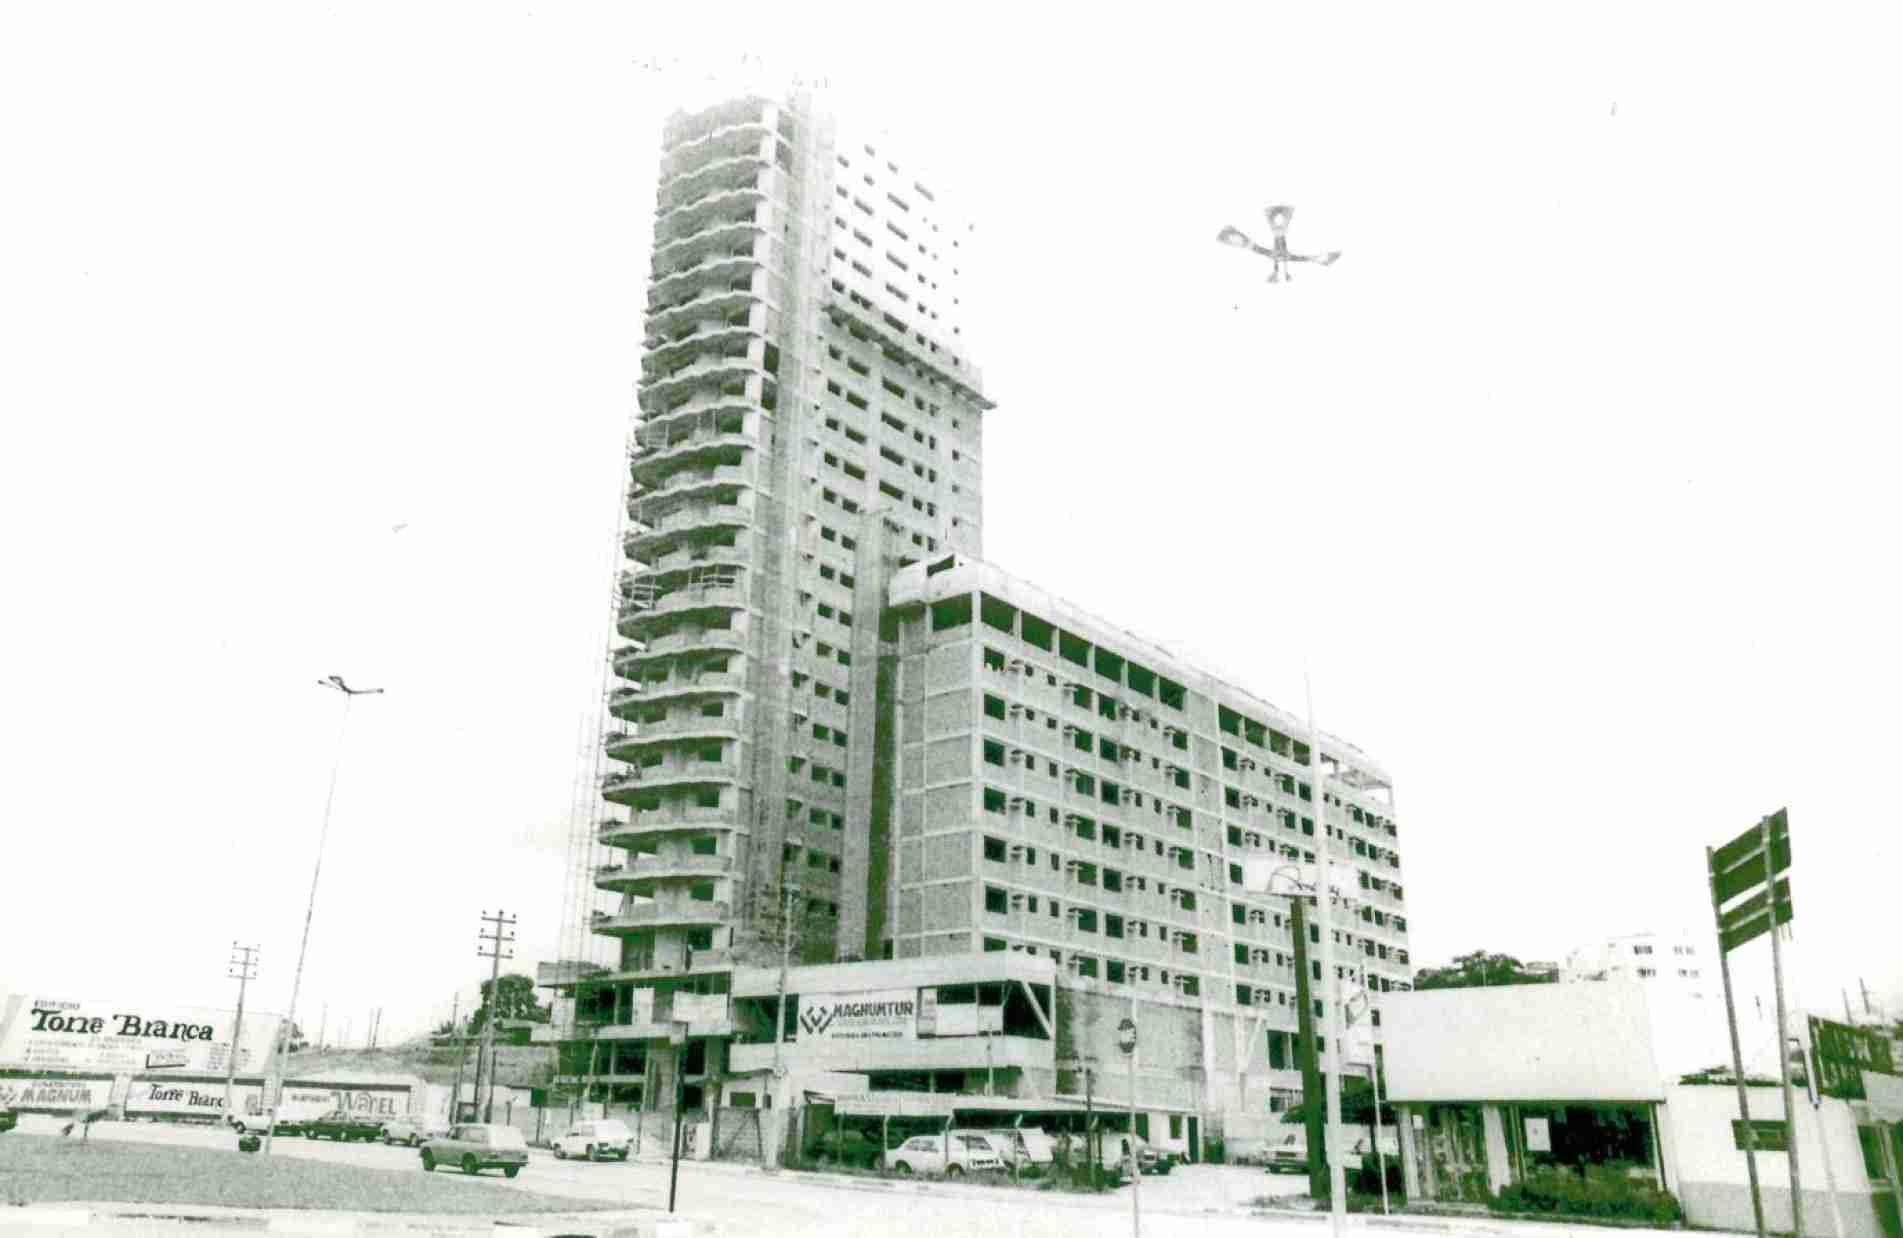 Construção do Edifício Torre Branca e Hotel, no ano de 1990.